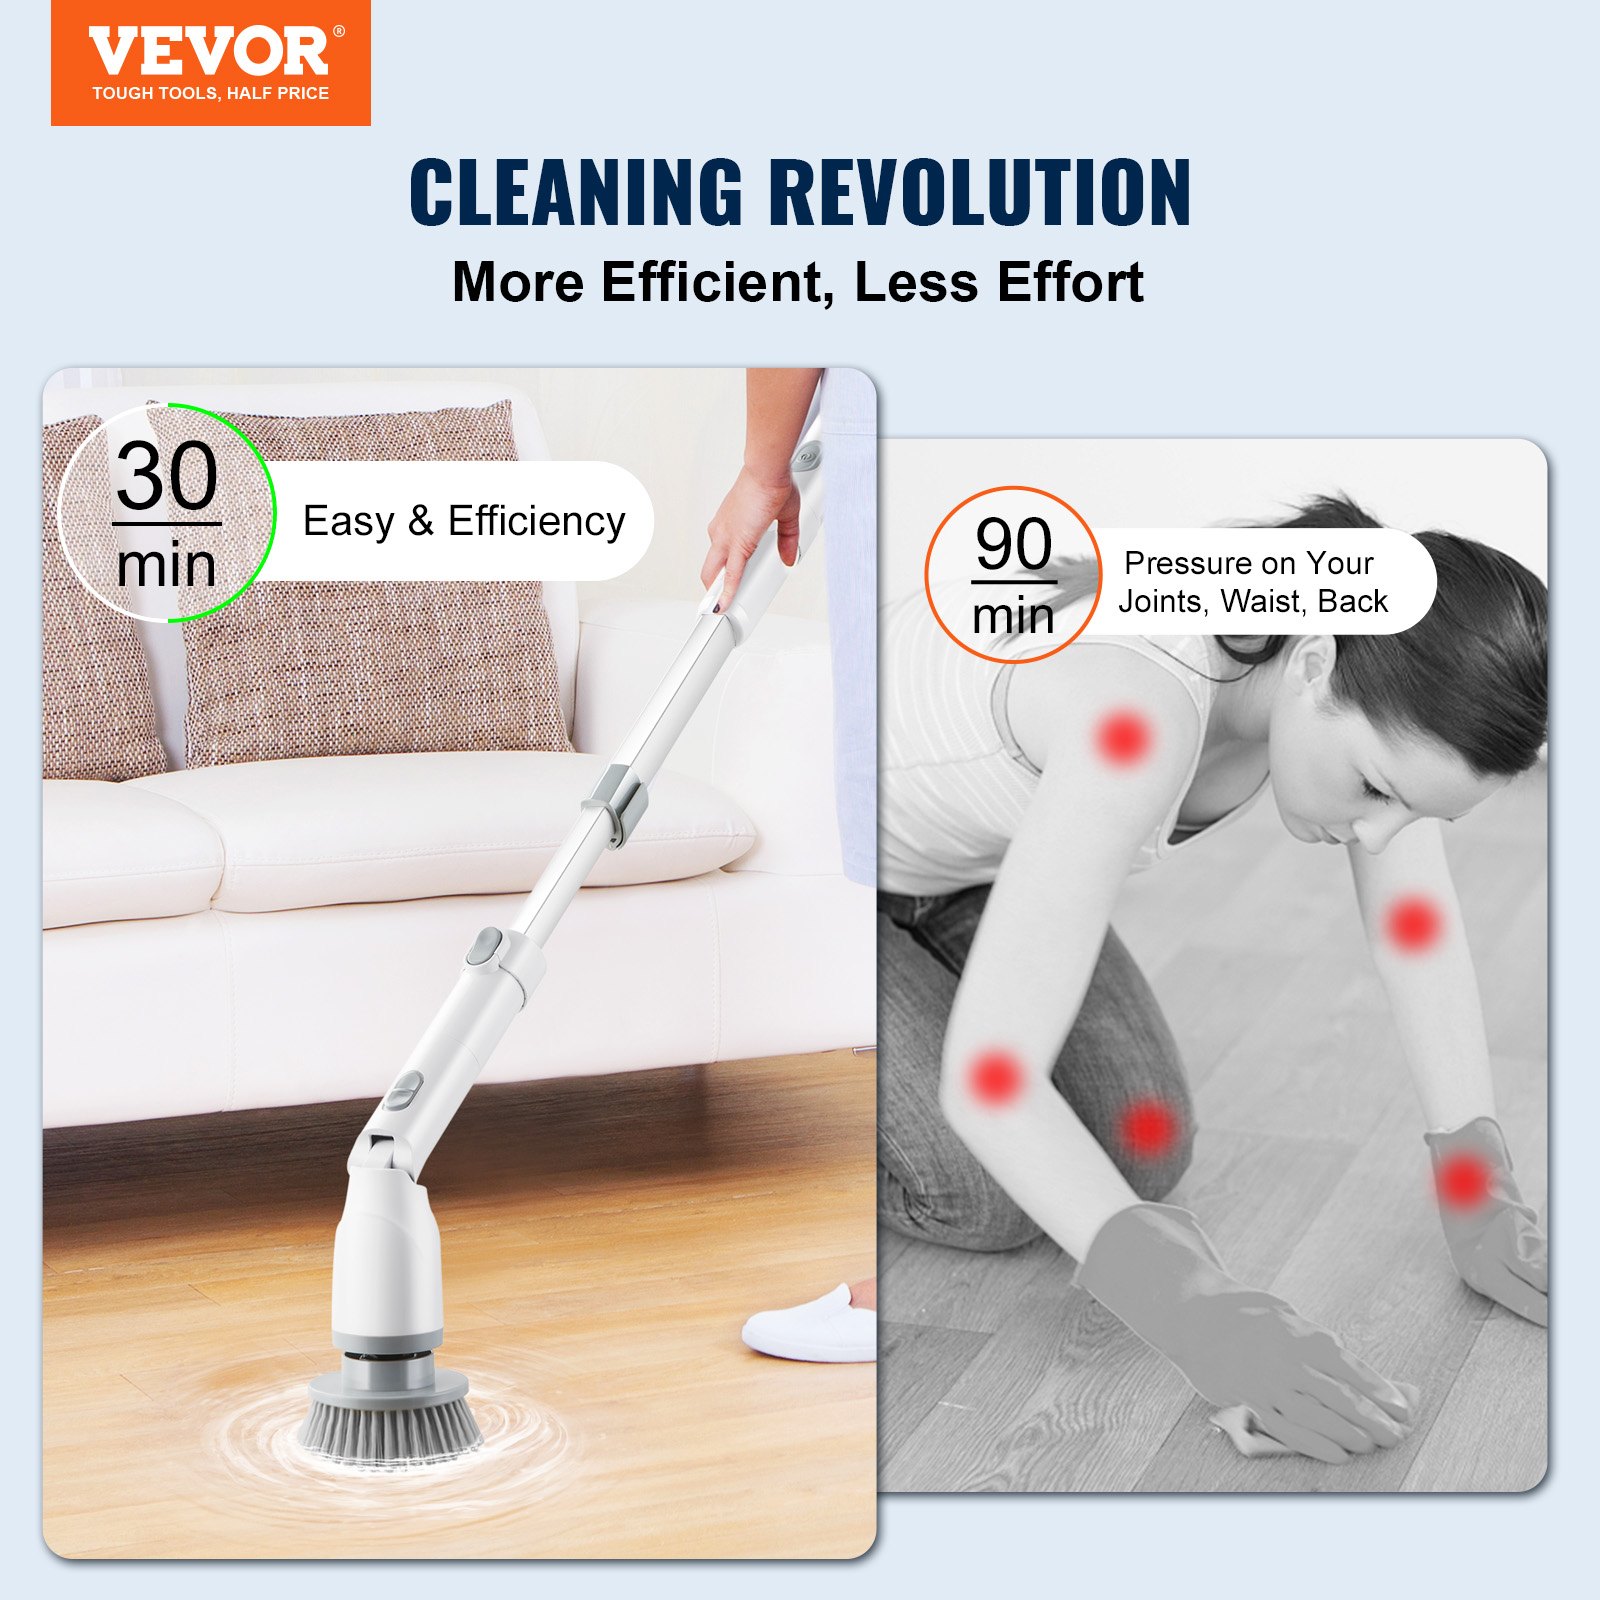 La lavapavimenti motorizzata VEVOR alimentata a batteria è particolarmente utile in bagno